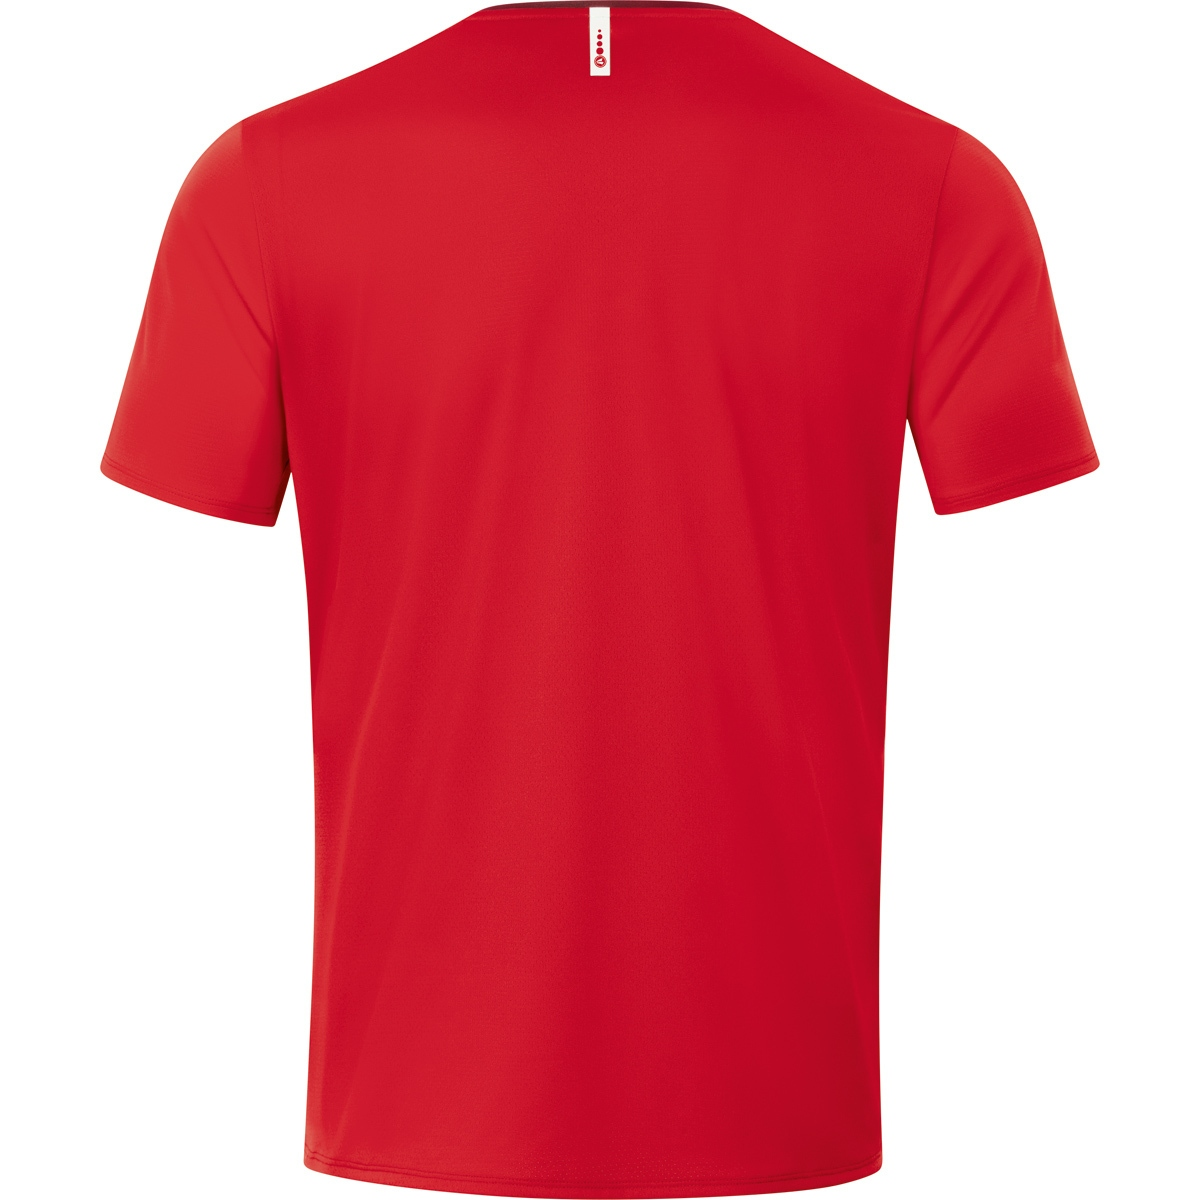 JAKO T-Shirt Herren, Champ 6120 L, rot/weinrot, 2.0 Gr